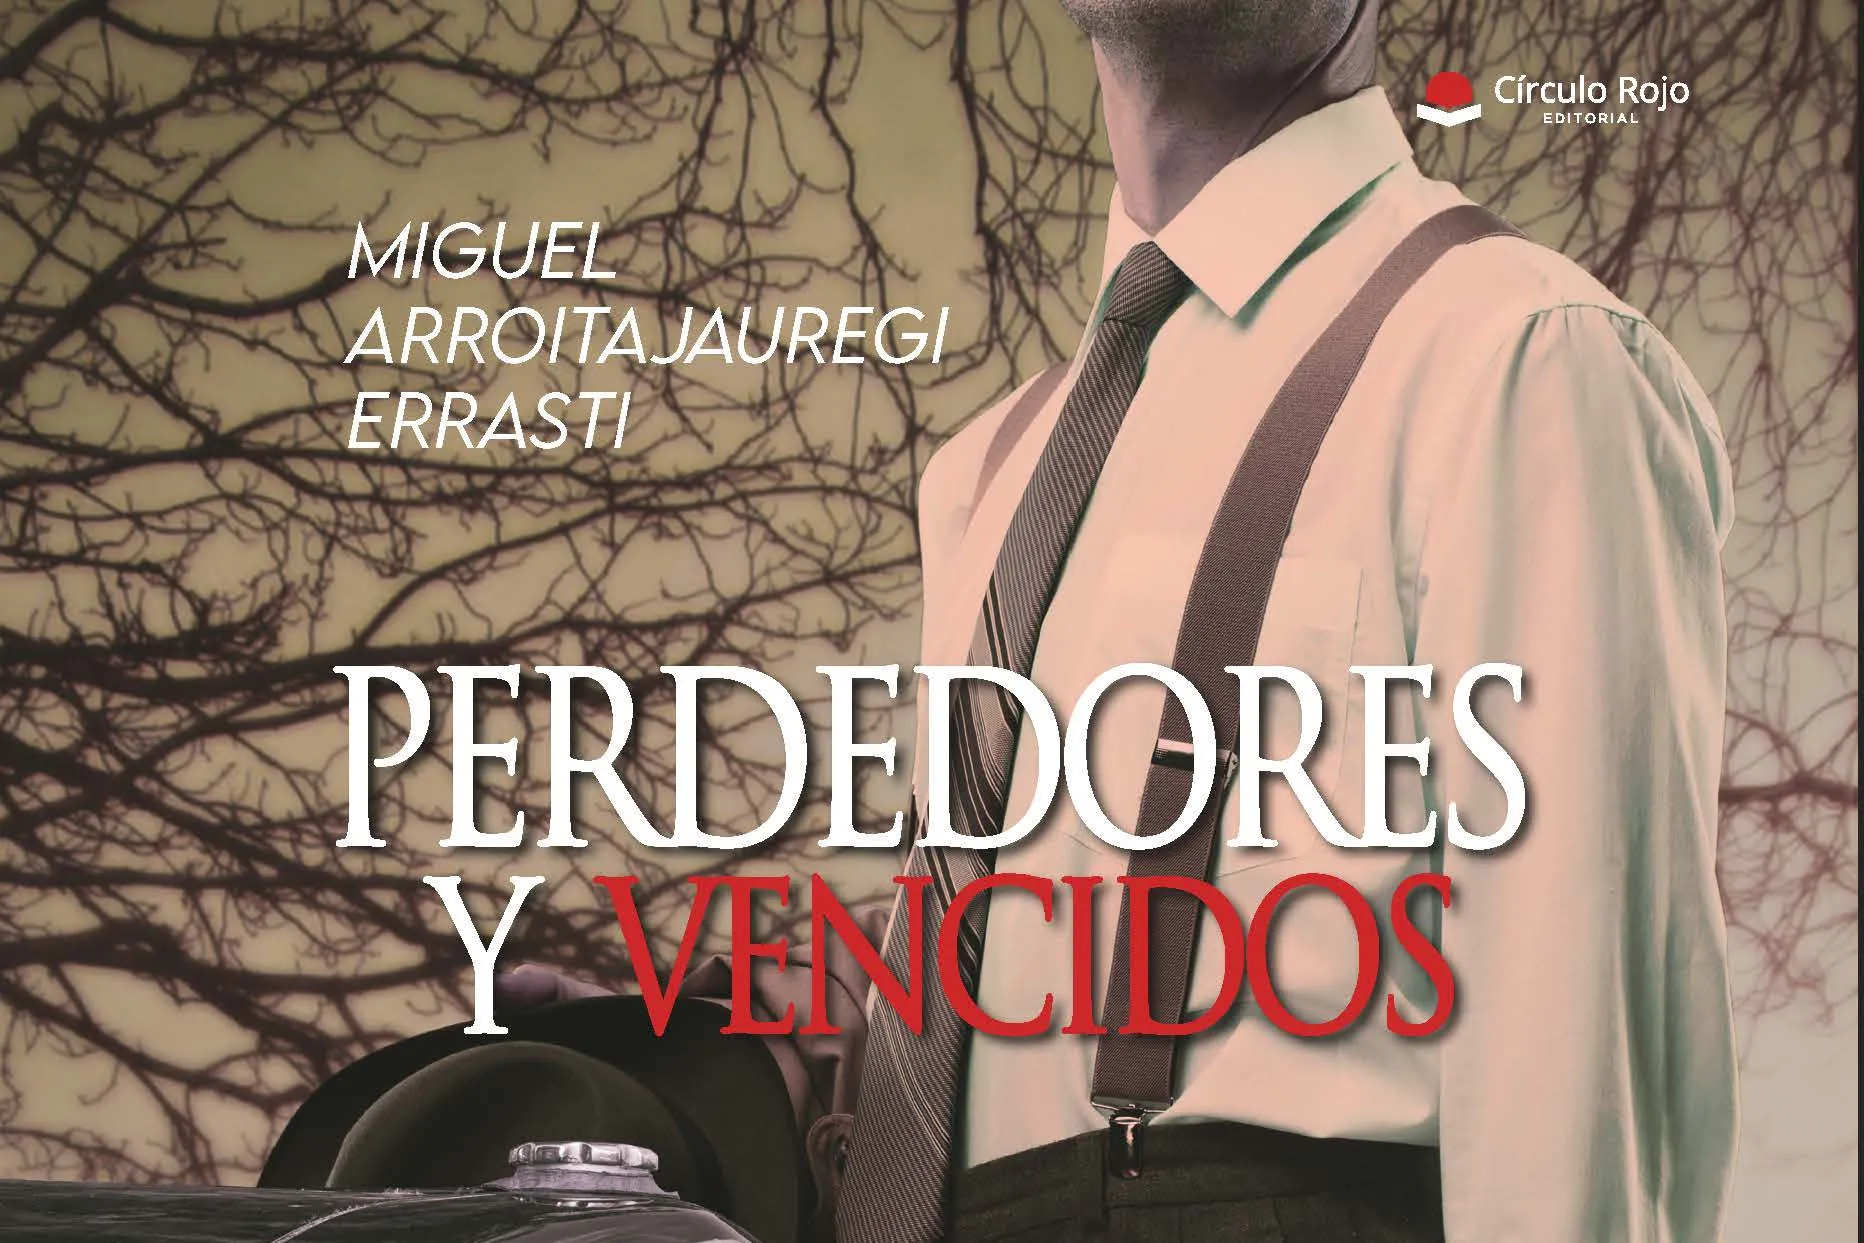 Presentación de libro: "Perdedores y vencidos" (Miguel Arroitajauregi Errasti)